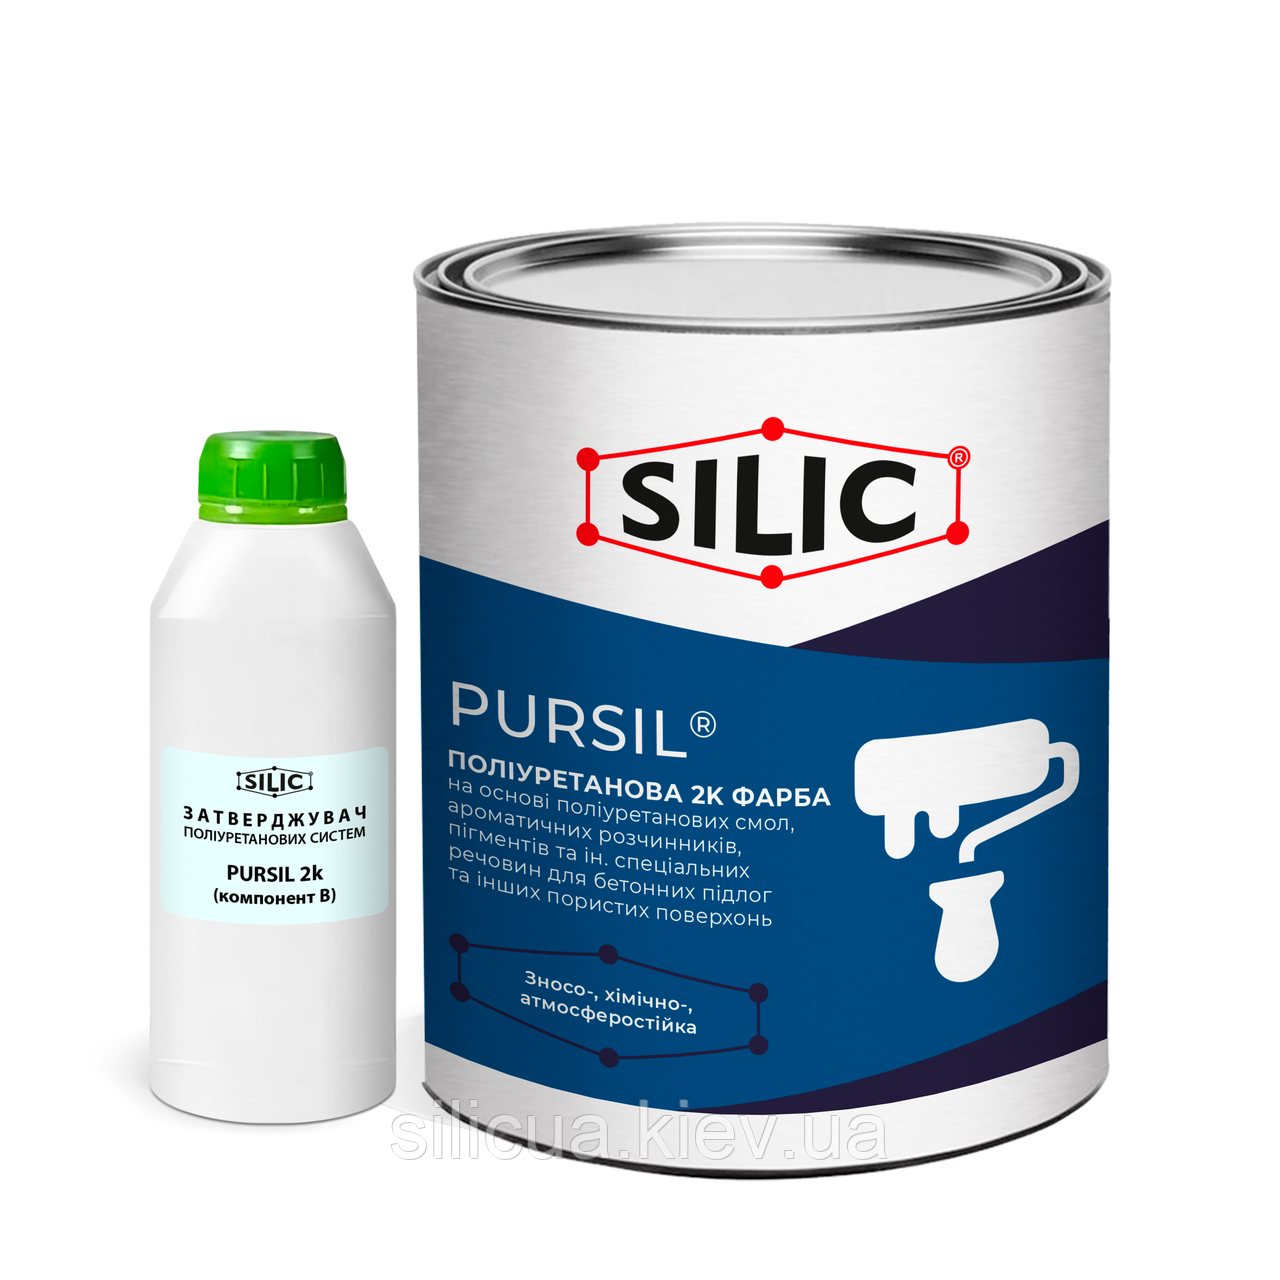 Поліуретанова фарба для бетонної підлоги Pursil (1кг) Сілік матова